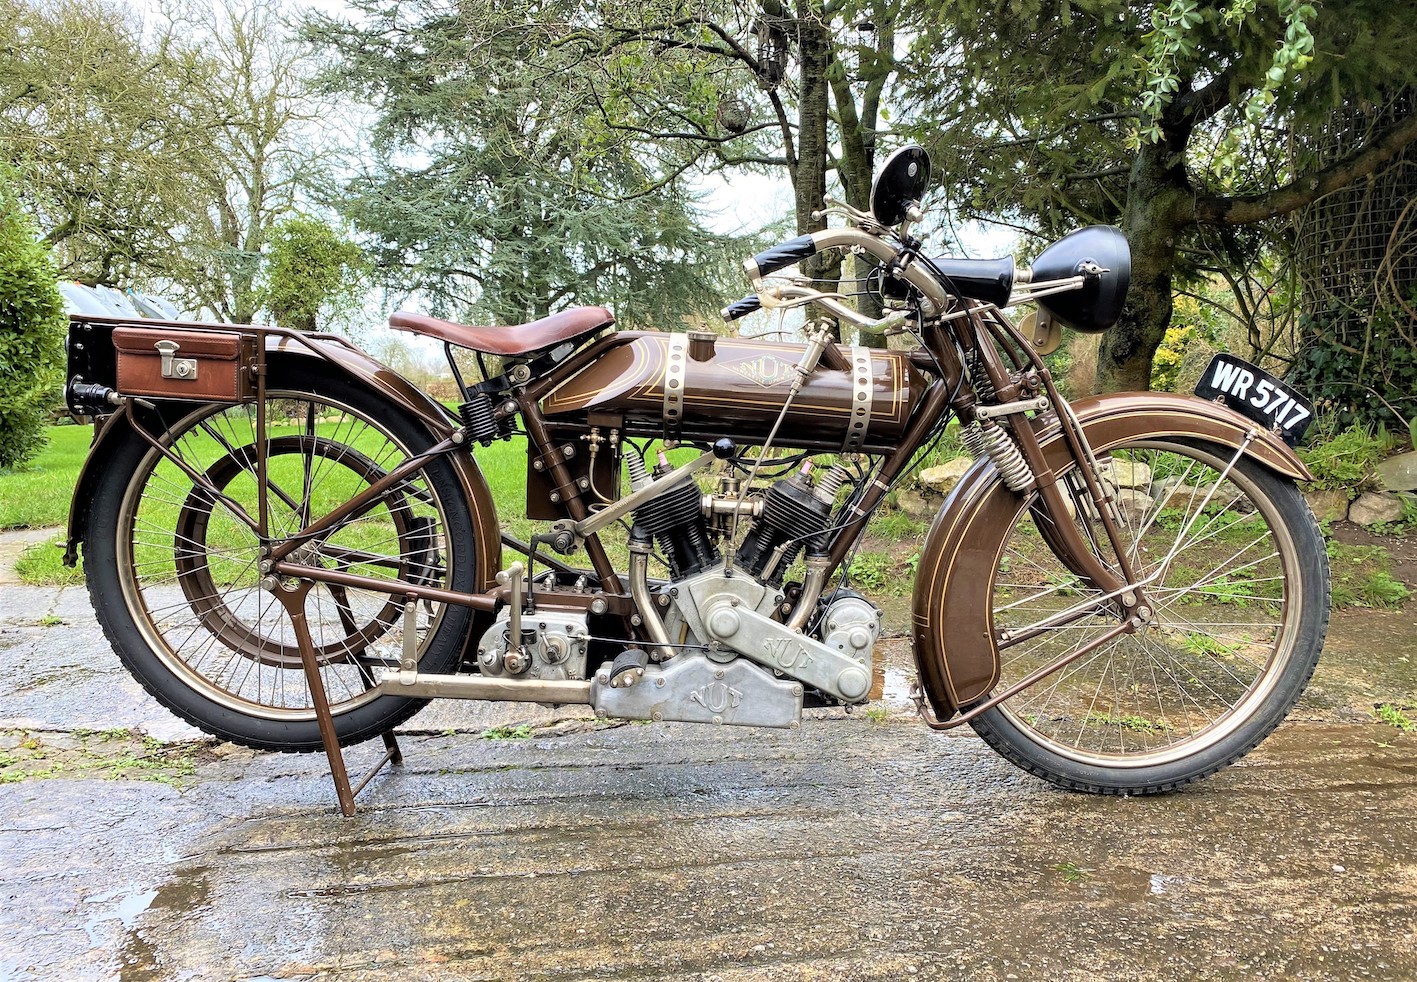 1920 Nut Model TT sold at auction